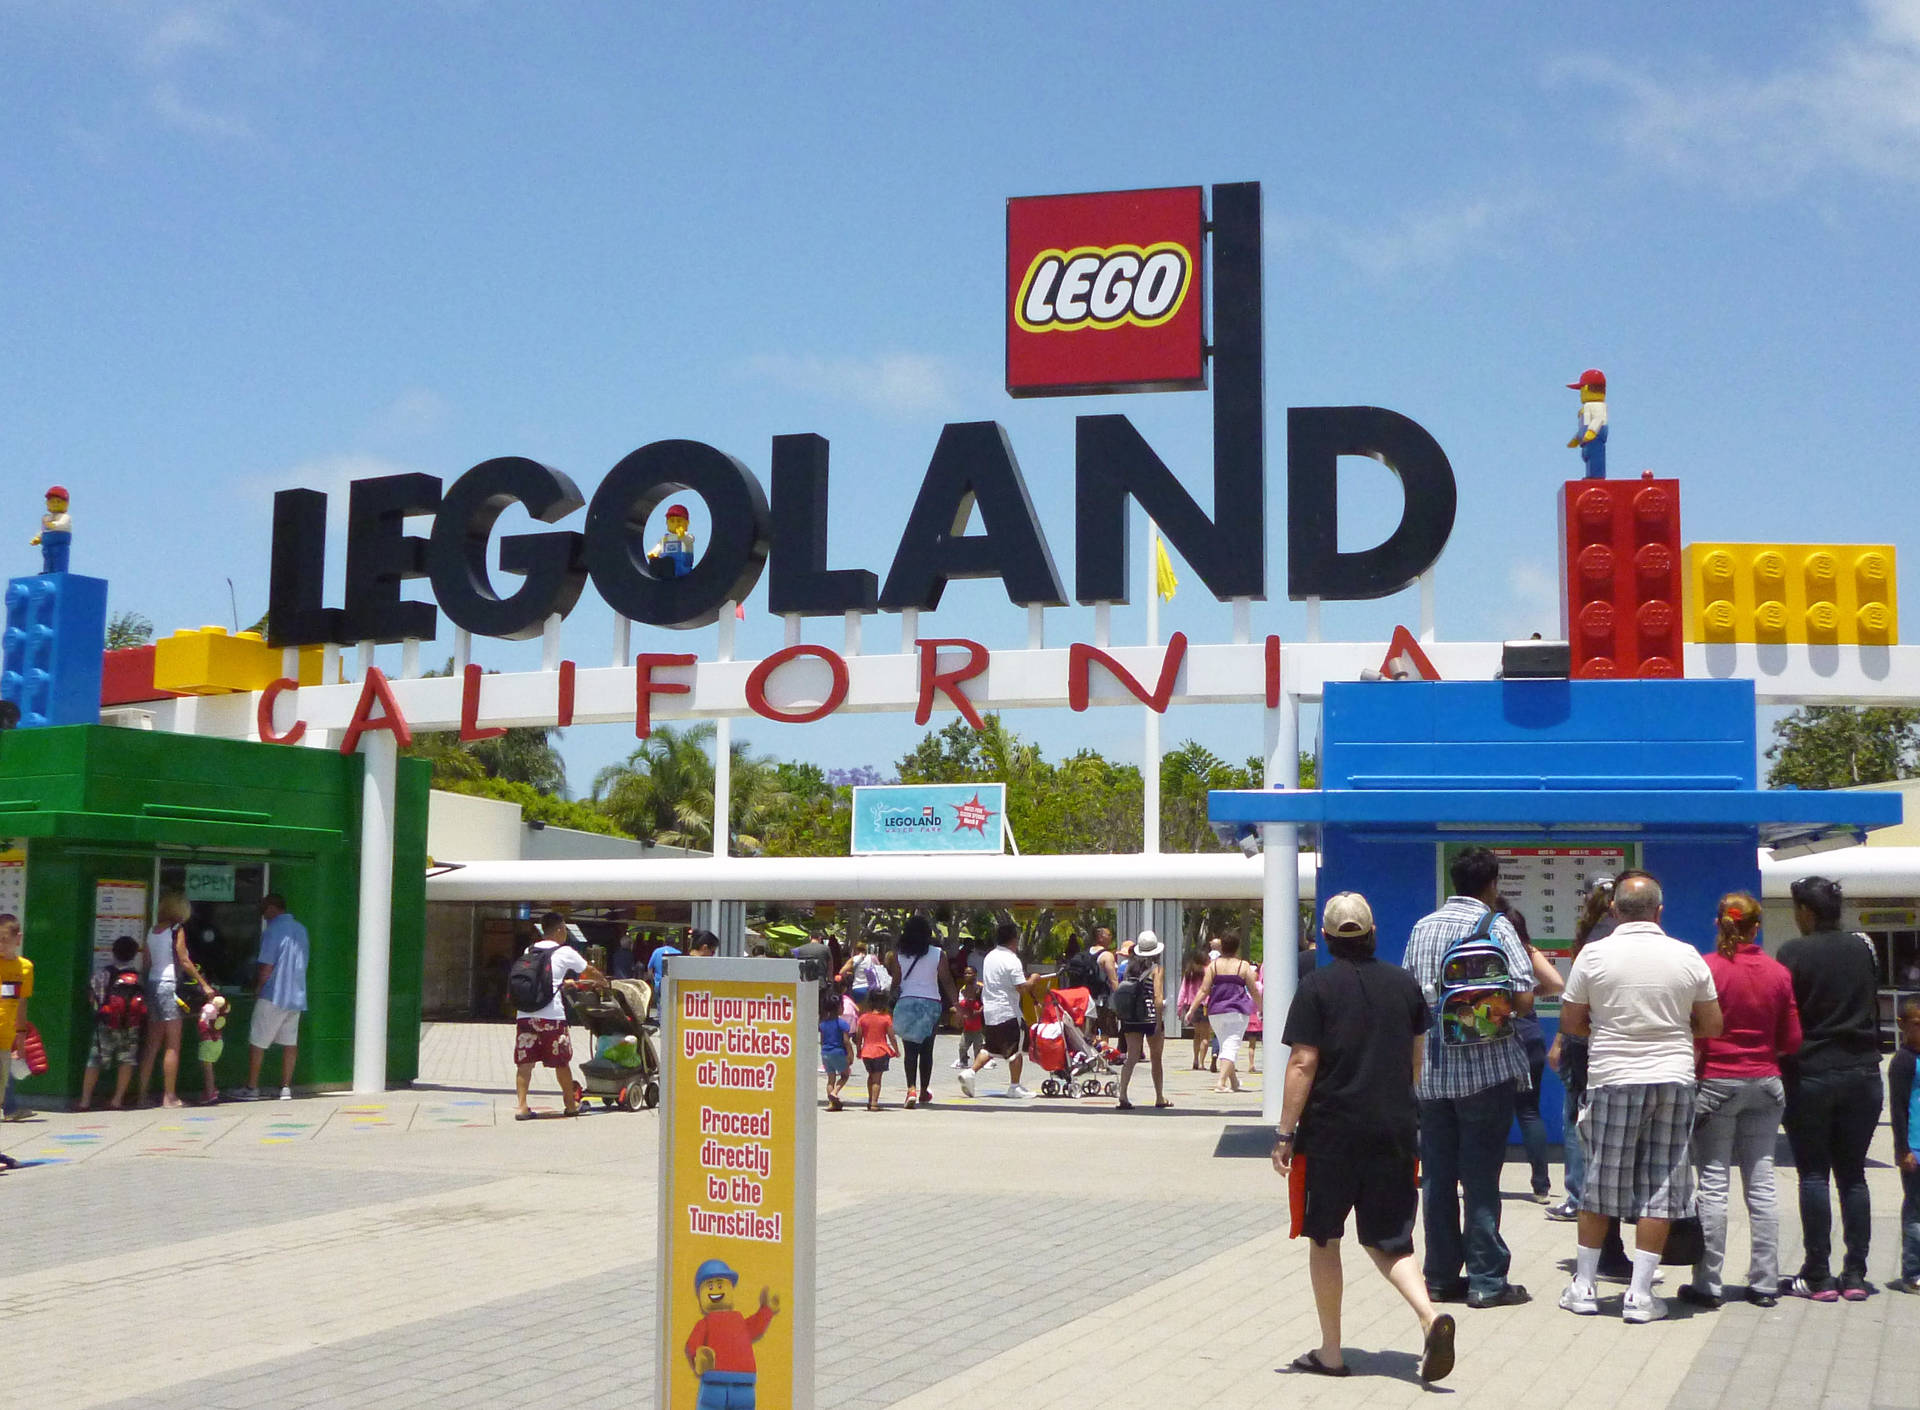 Denne tapet viser Legoland Californien. Wallpaper